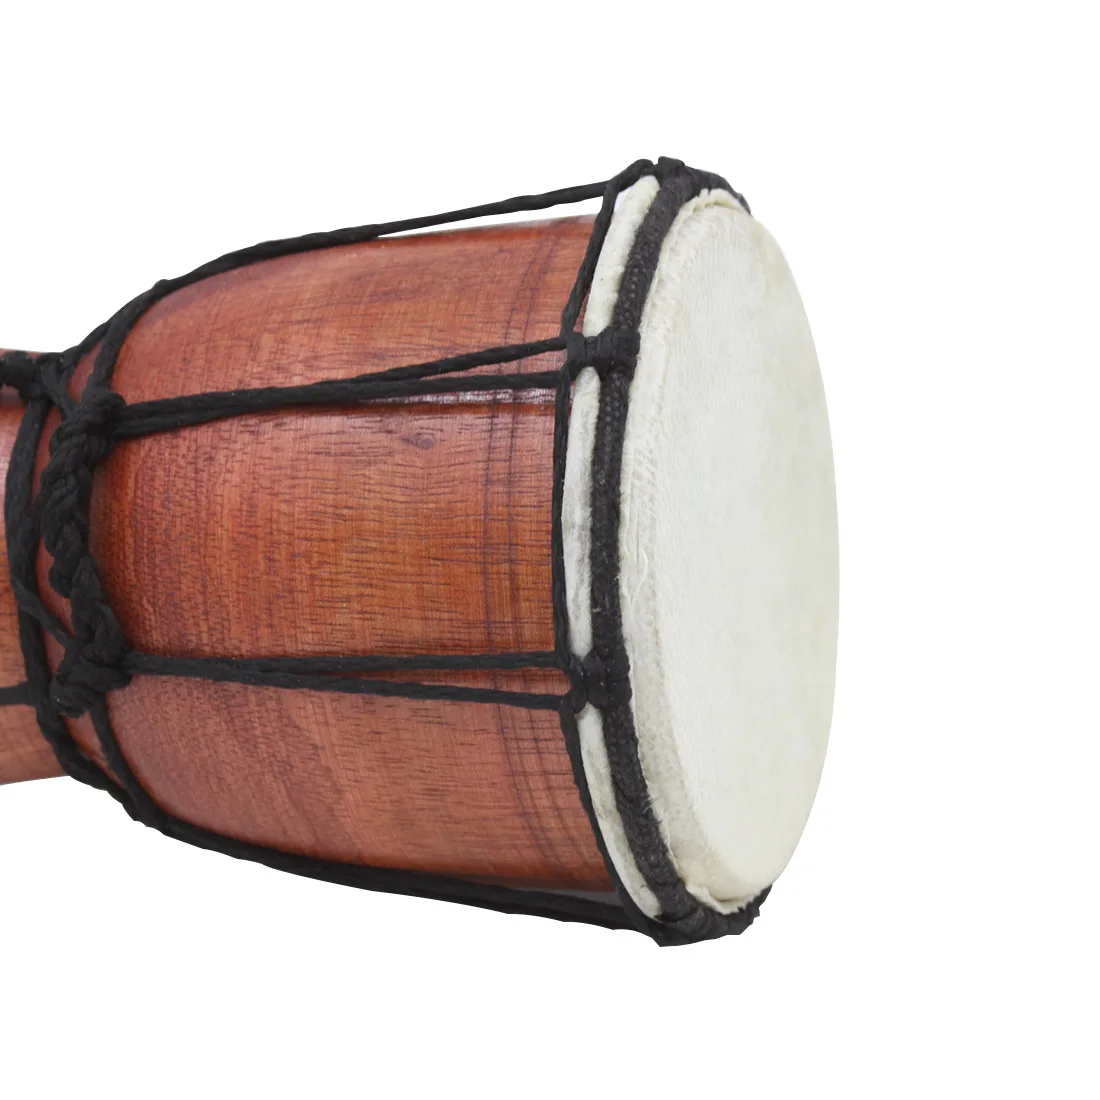 1 шт. 4 дюйма Профессиональный Чистый ручной Африканский Djembe барабан Bongo дерево хороший звук музыкальная инструмент